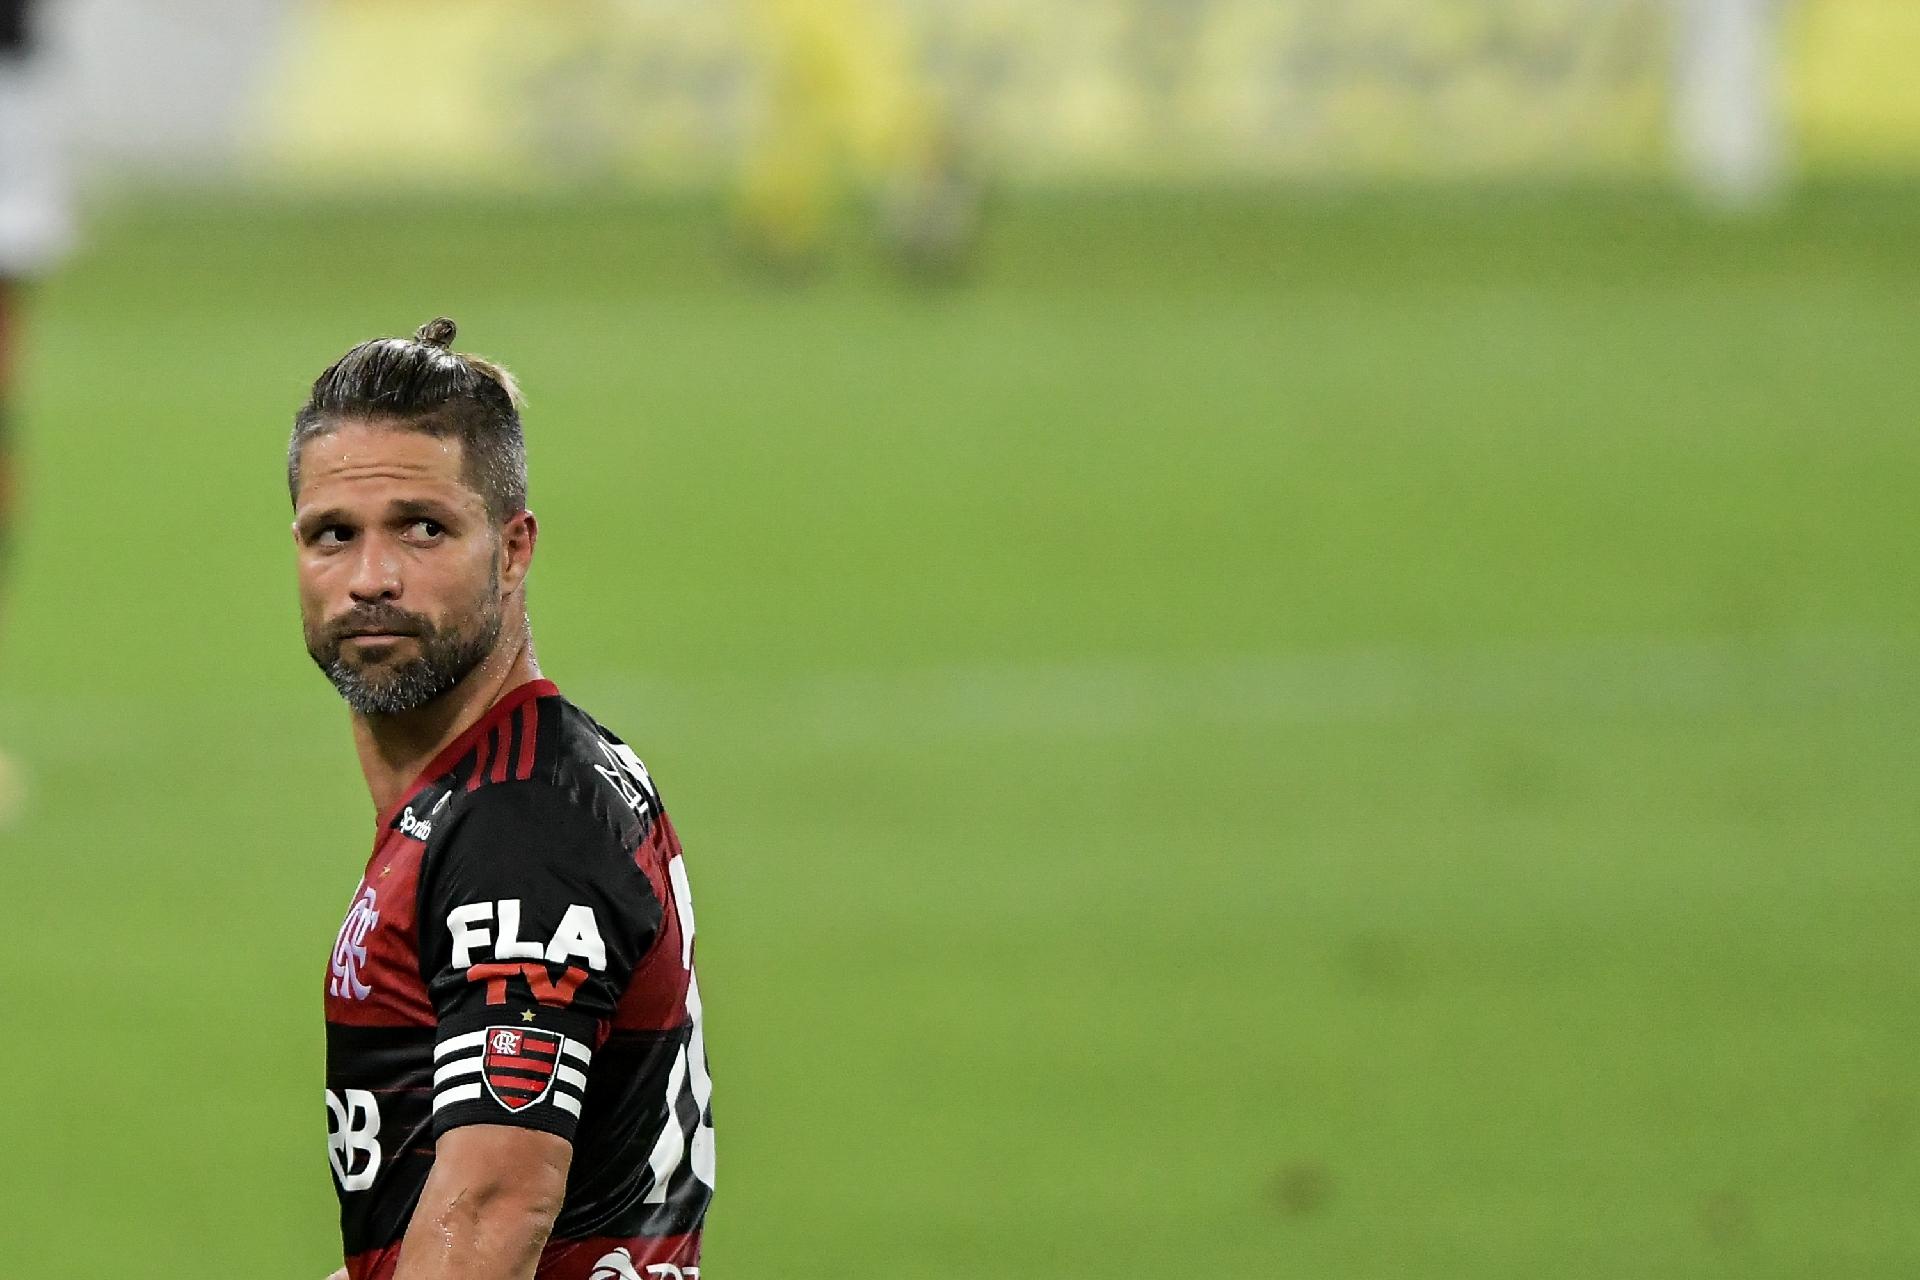 Diego completa 37 anos e recebe homenagens do Flamengo e perfil da